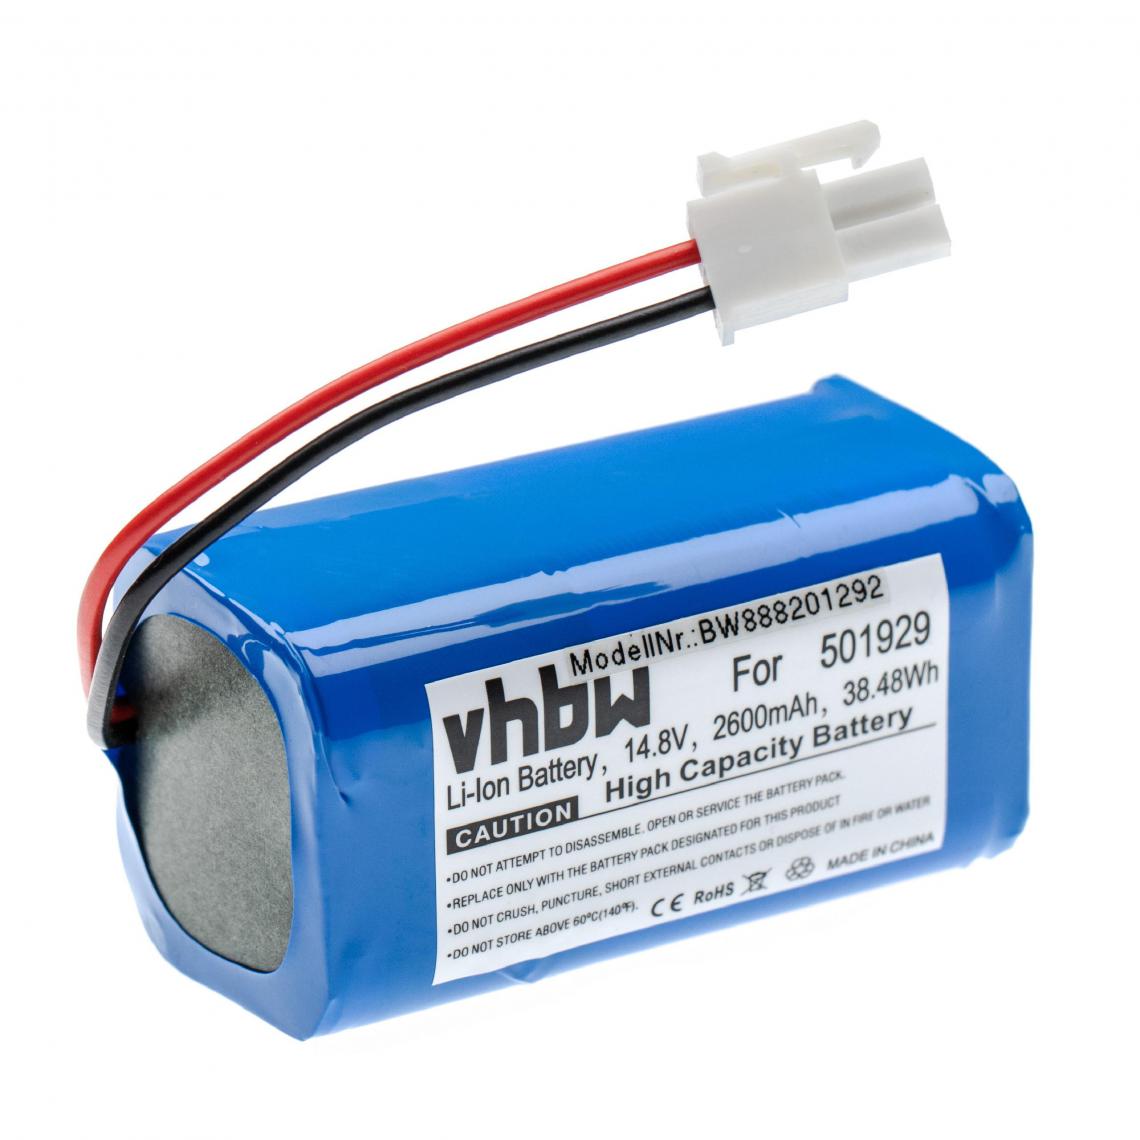 Vhbw - vhbw Batterie compatible avec iLife X620, Y8H4 aspirateur, robot électroménager (2600mAh, 14,8V, Li-ion) - Accessoire entretien des sols